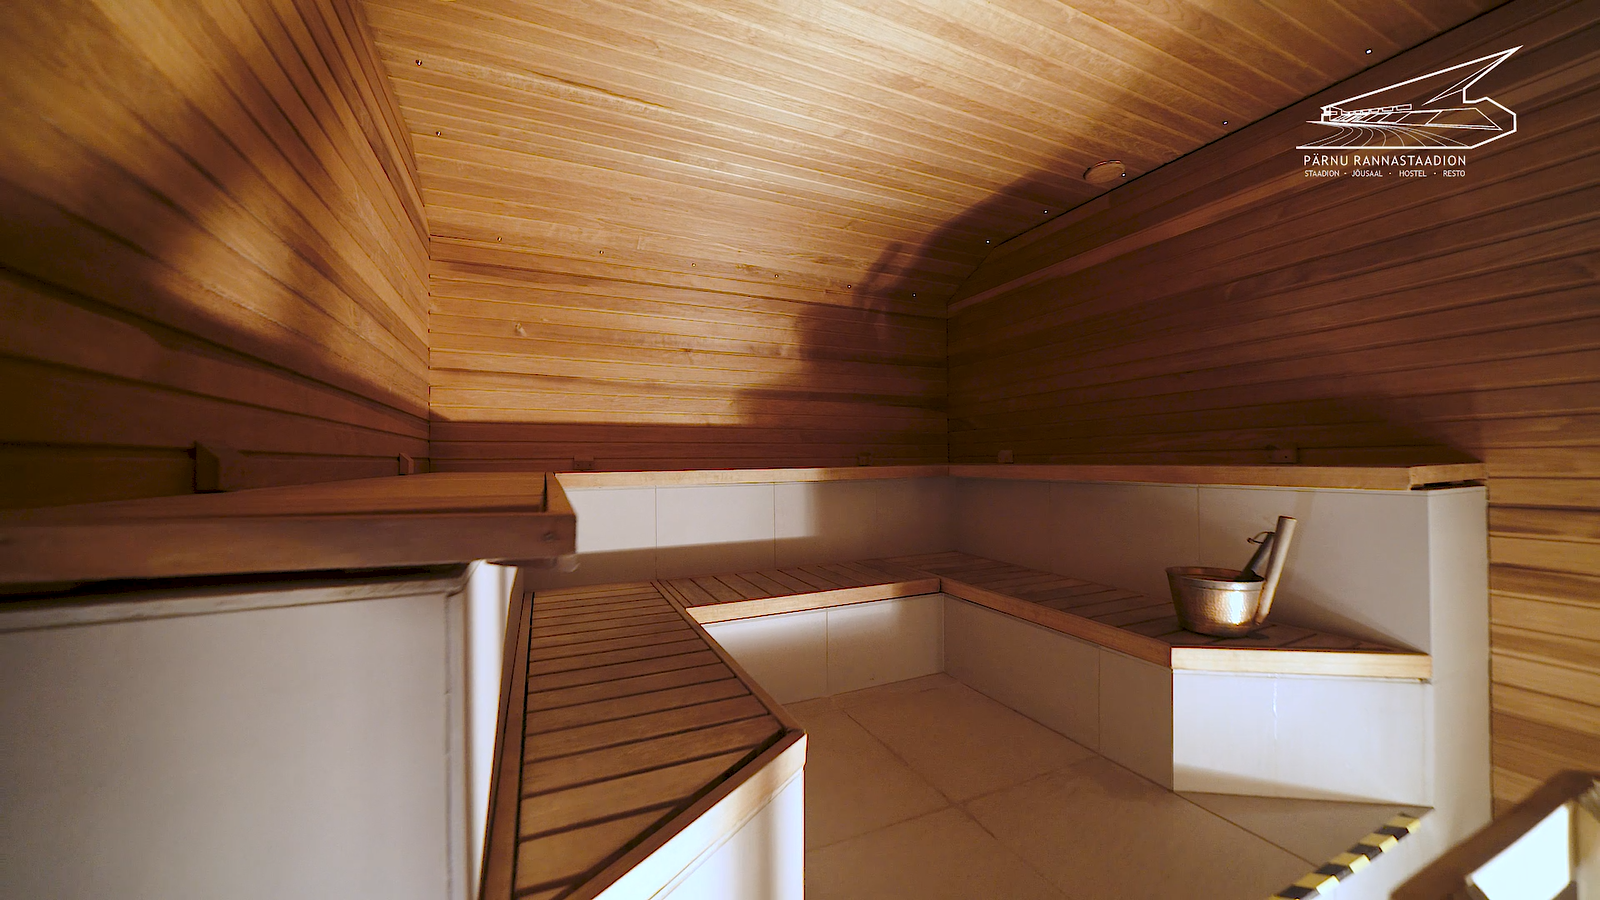 Pärnun rantastadionin sauna